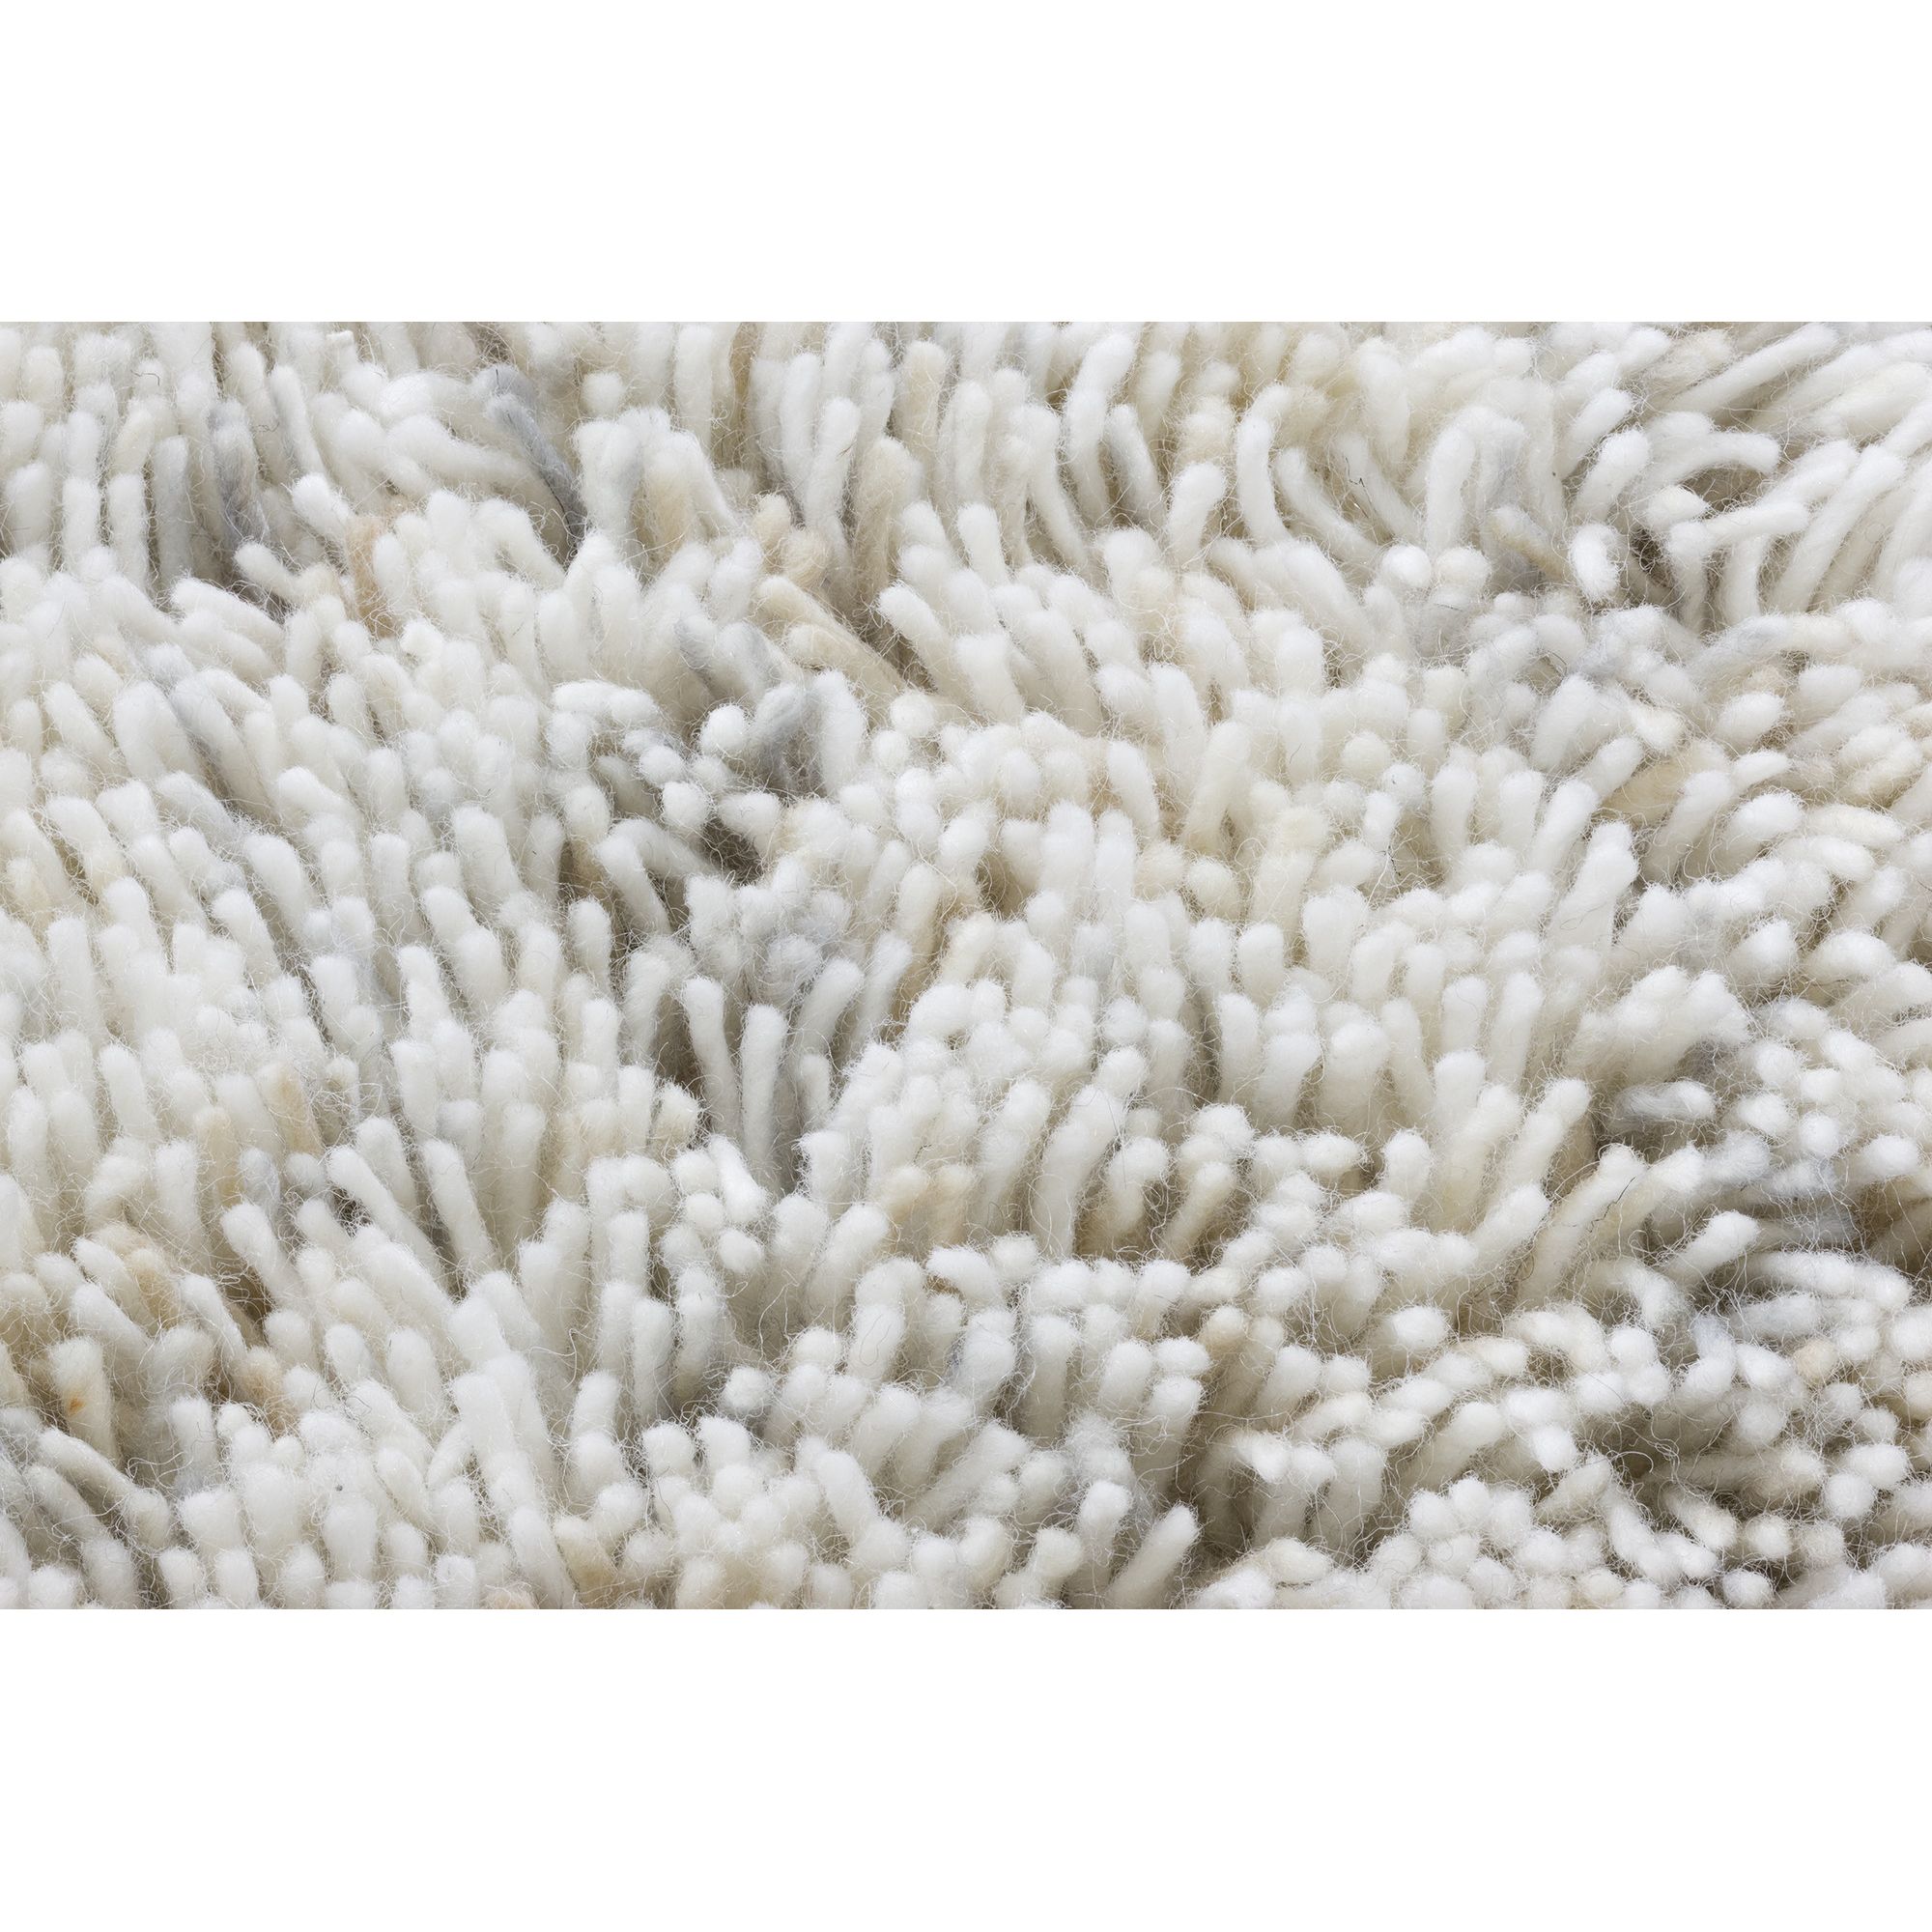 Linie Design Coral White Shag Rug - 300cm x 200cm at Tesco Direct